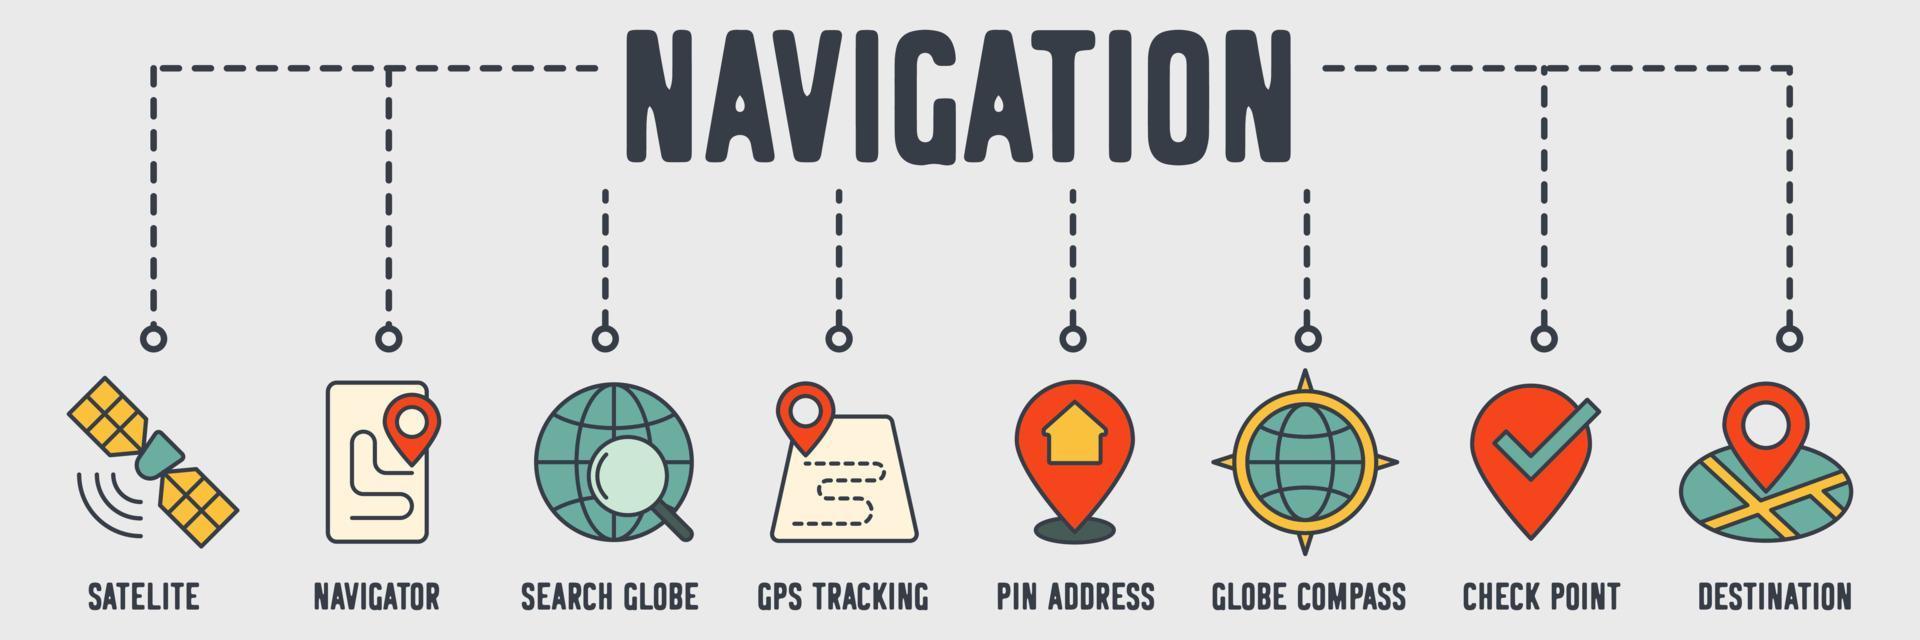 navigatie banner web pictogram. satelliet, navigator, zoekwereld, gps-tracking, pinadres, wereldbolkompas, controlepunt, bestemmings vectorillustratieconcept. vector